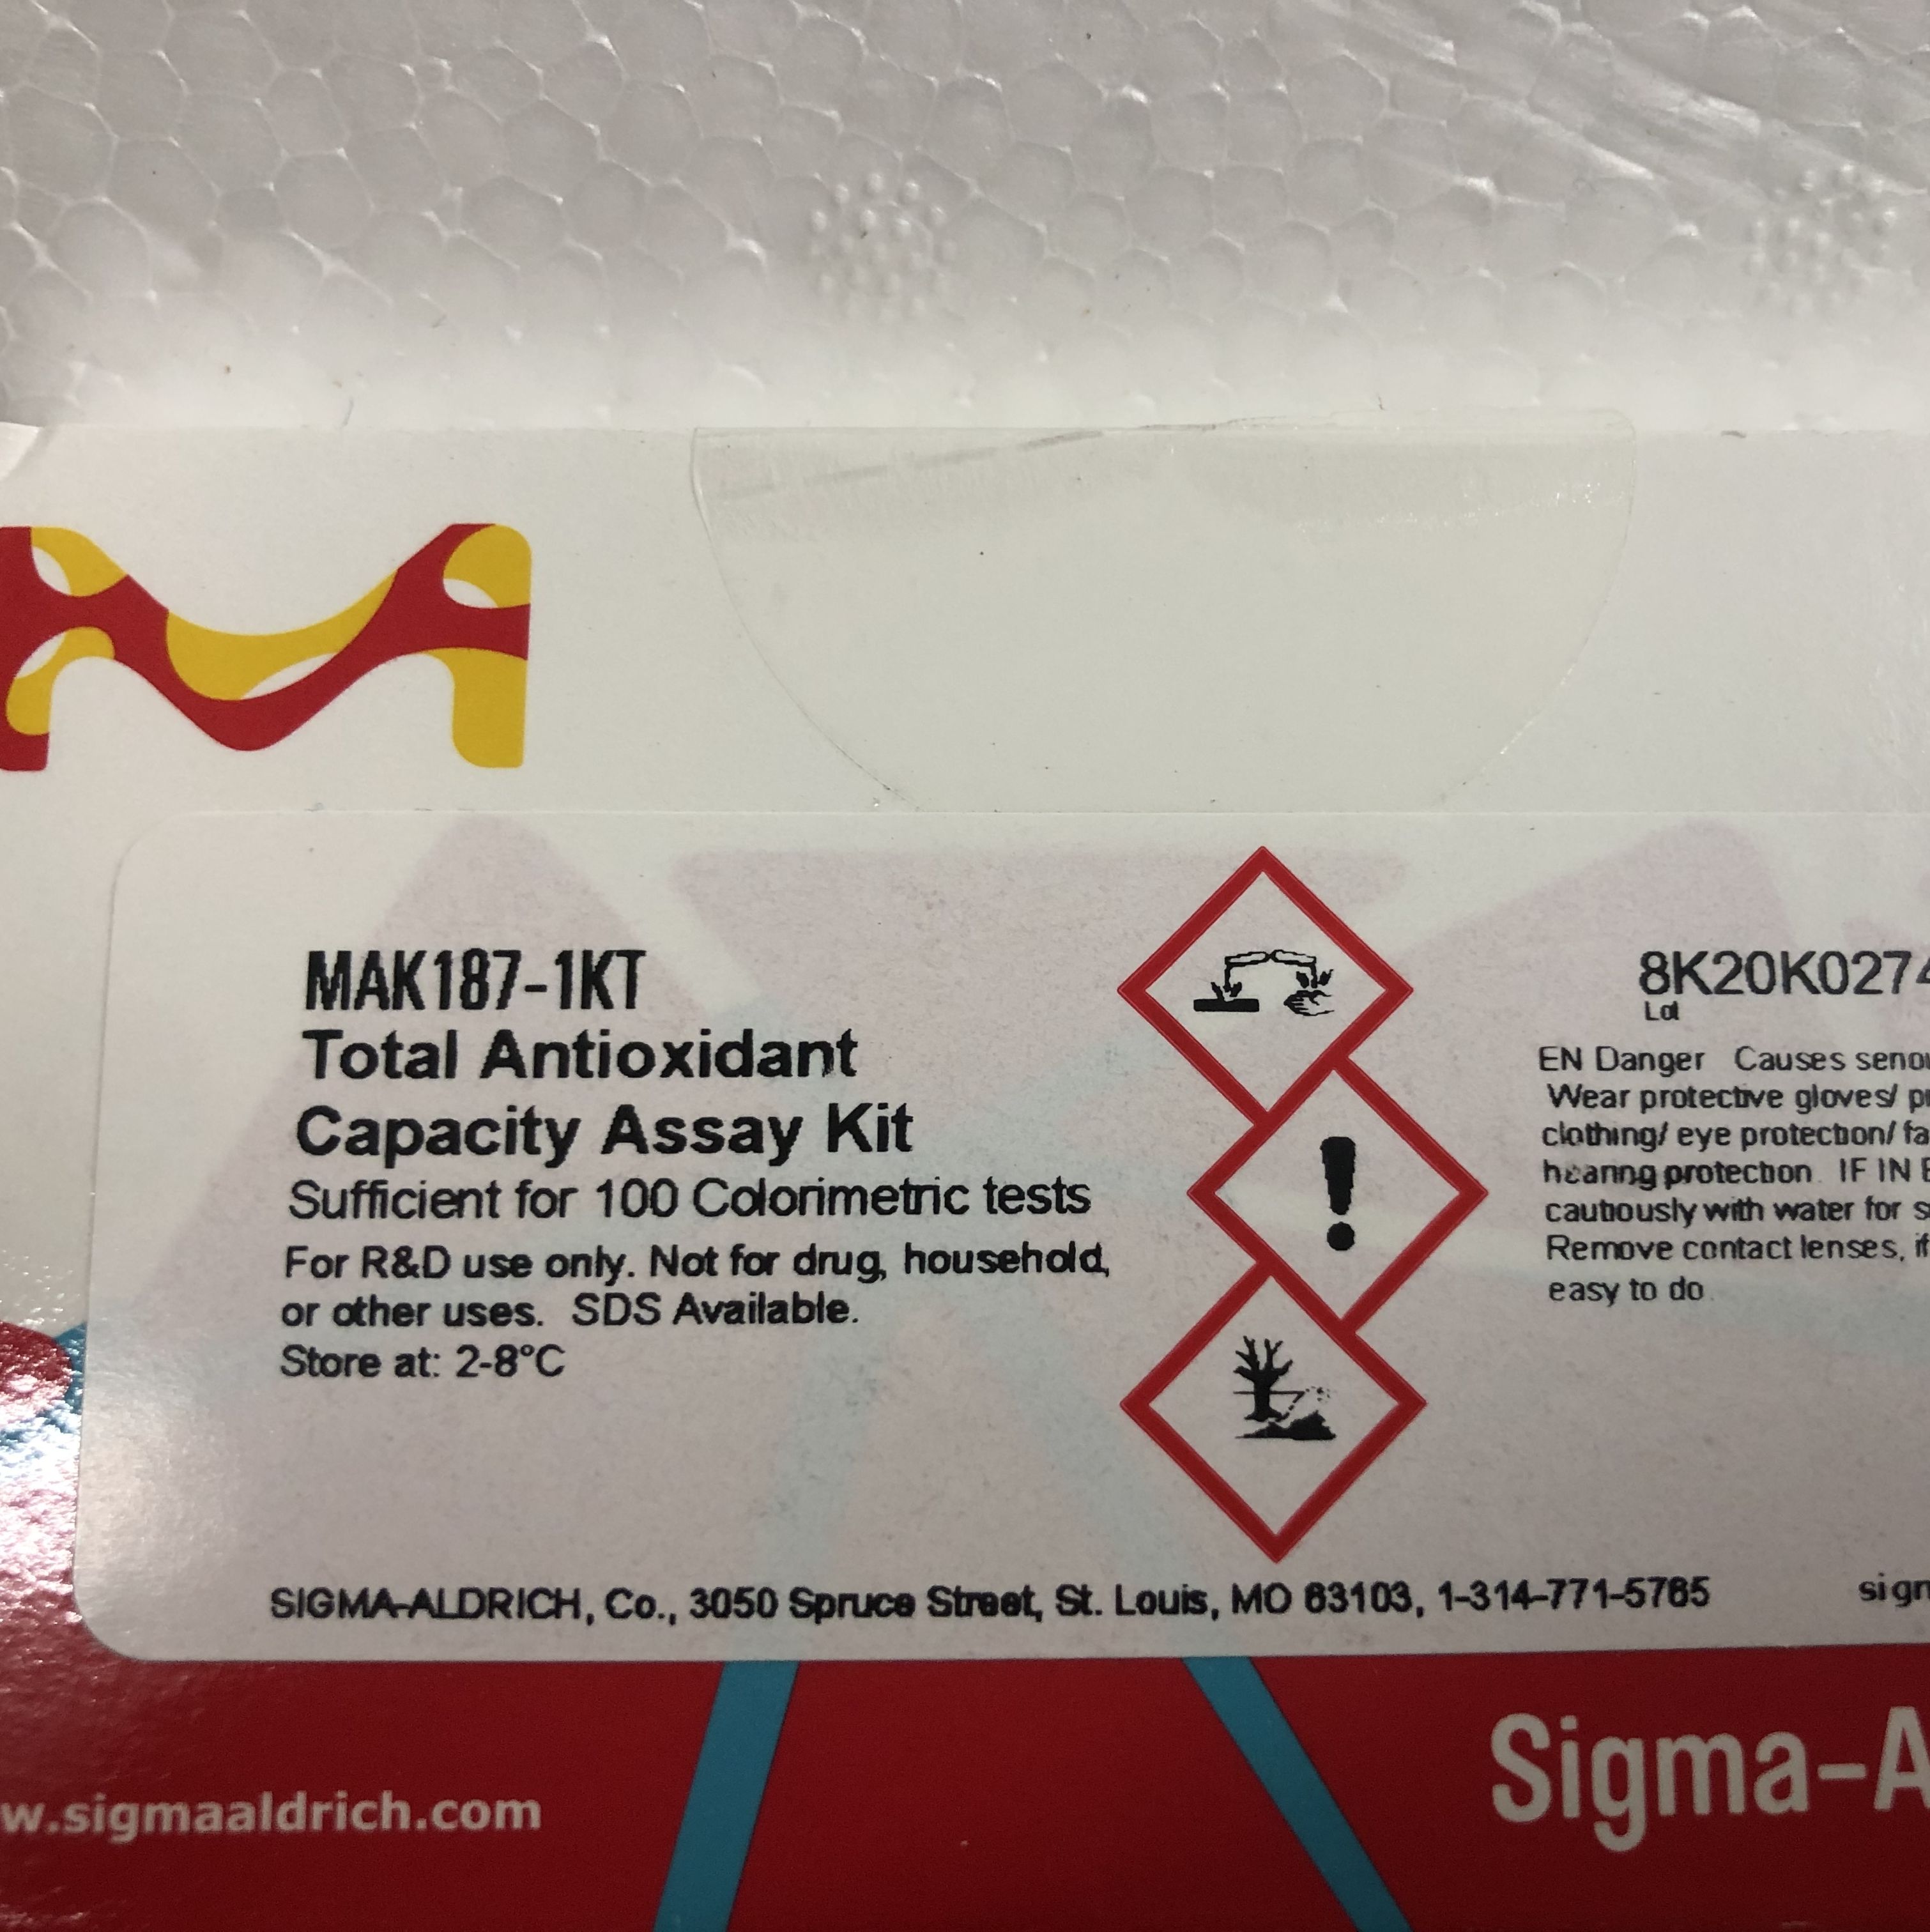 现货Sigma货号MAK187-1KT总抗氧化能力测定试剂盒13611631389上海睿安生物